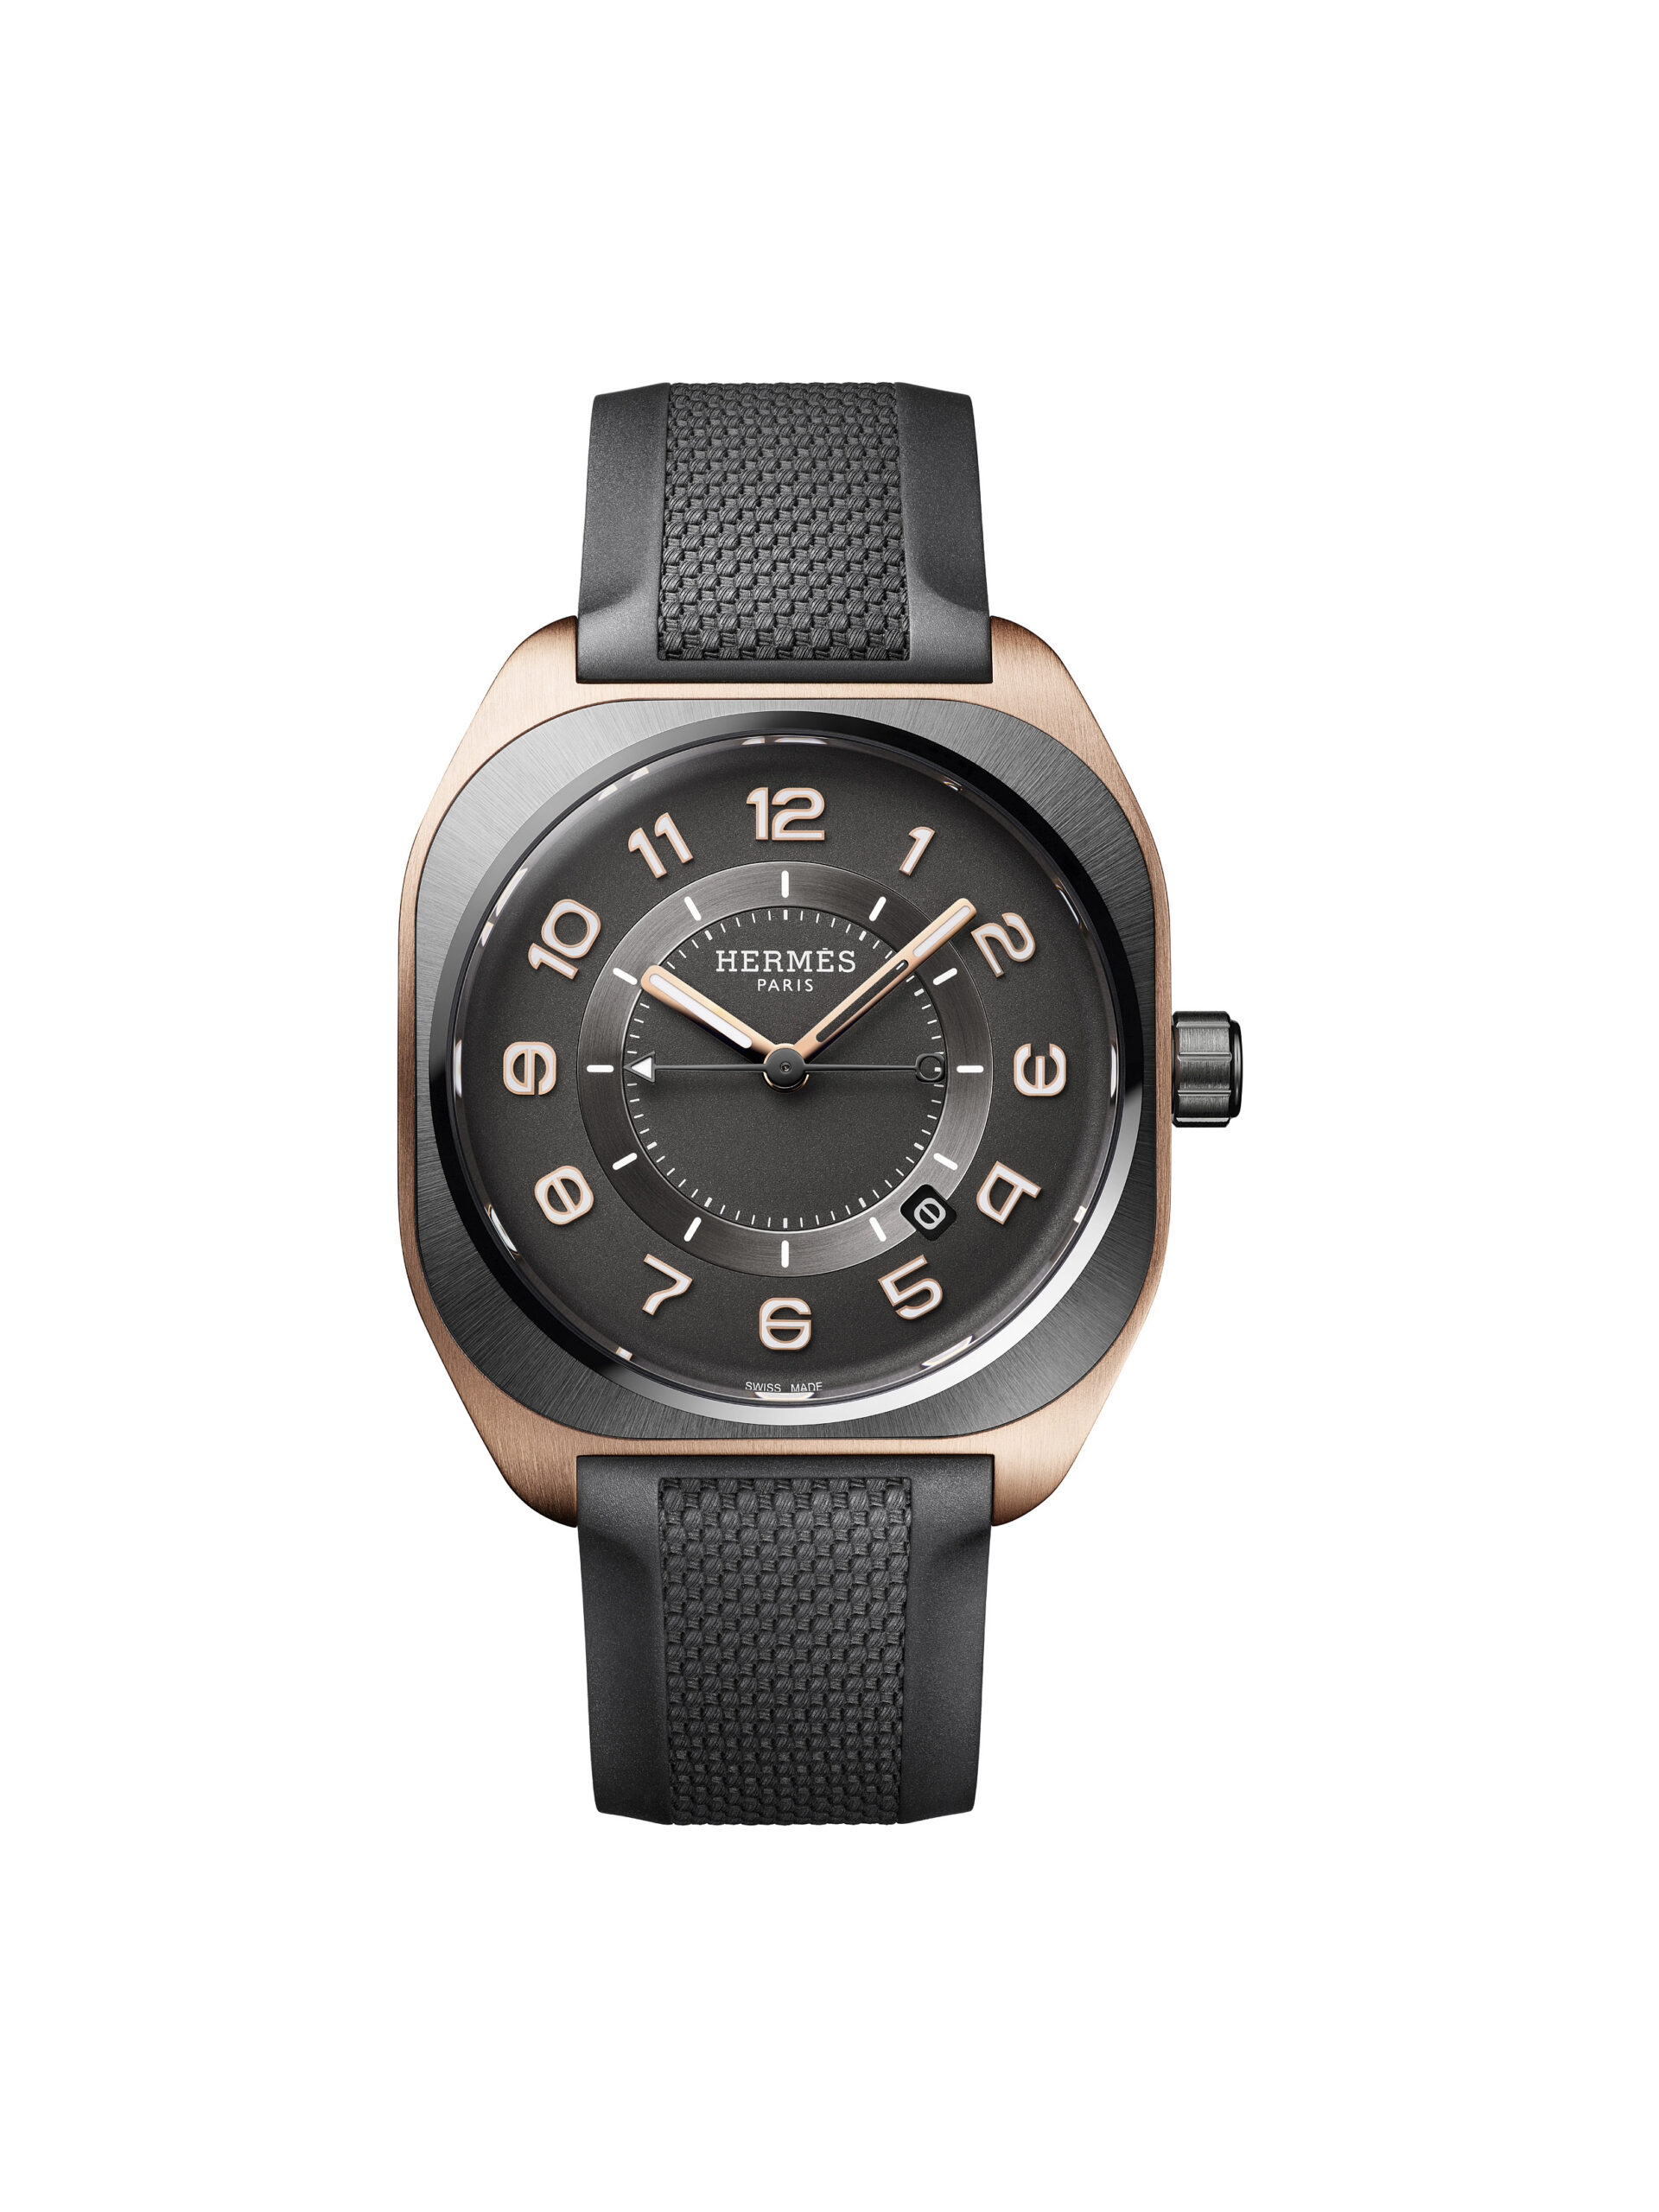 爱马仕 HERMÈS H08 腕錶搭配钛金属及玫瑰金錶壳和橡胶錶带